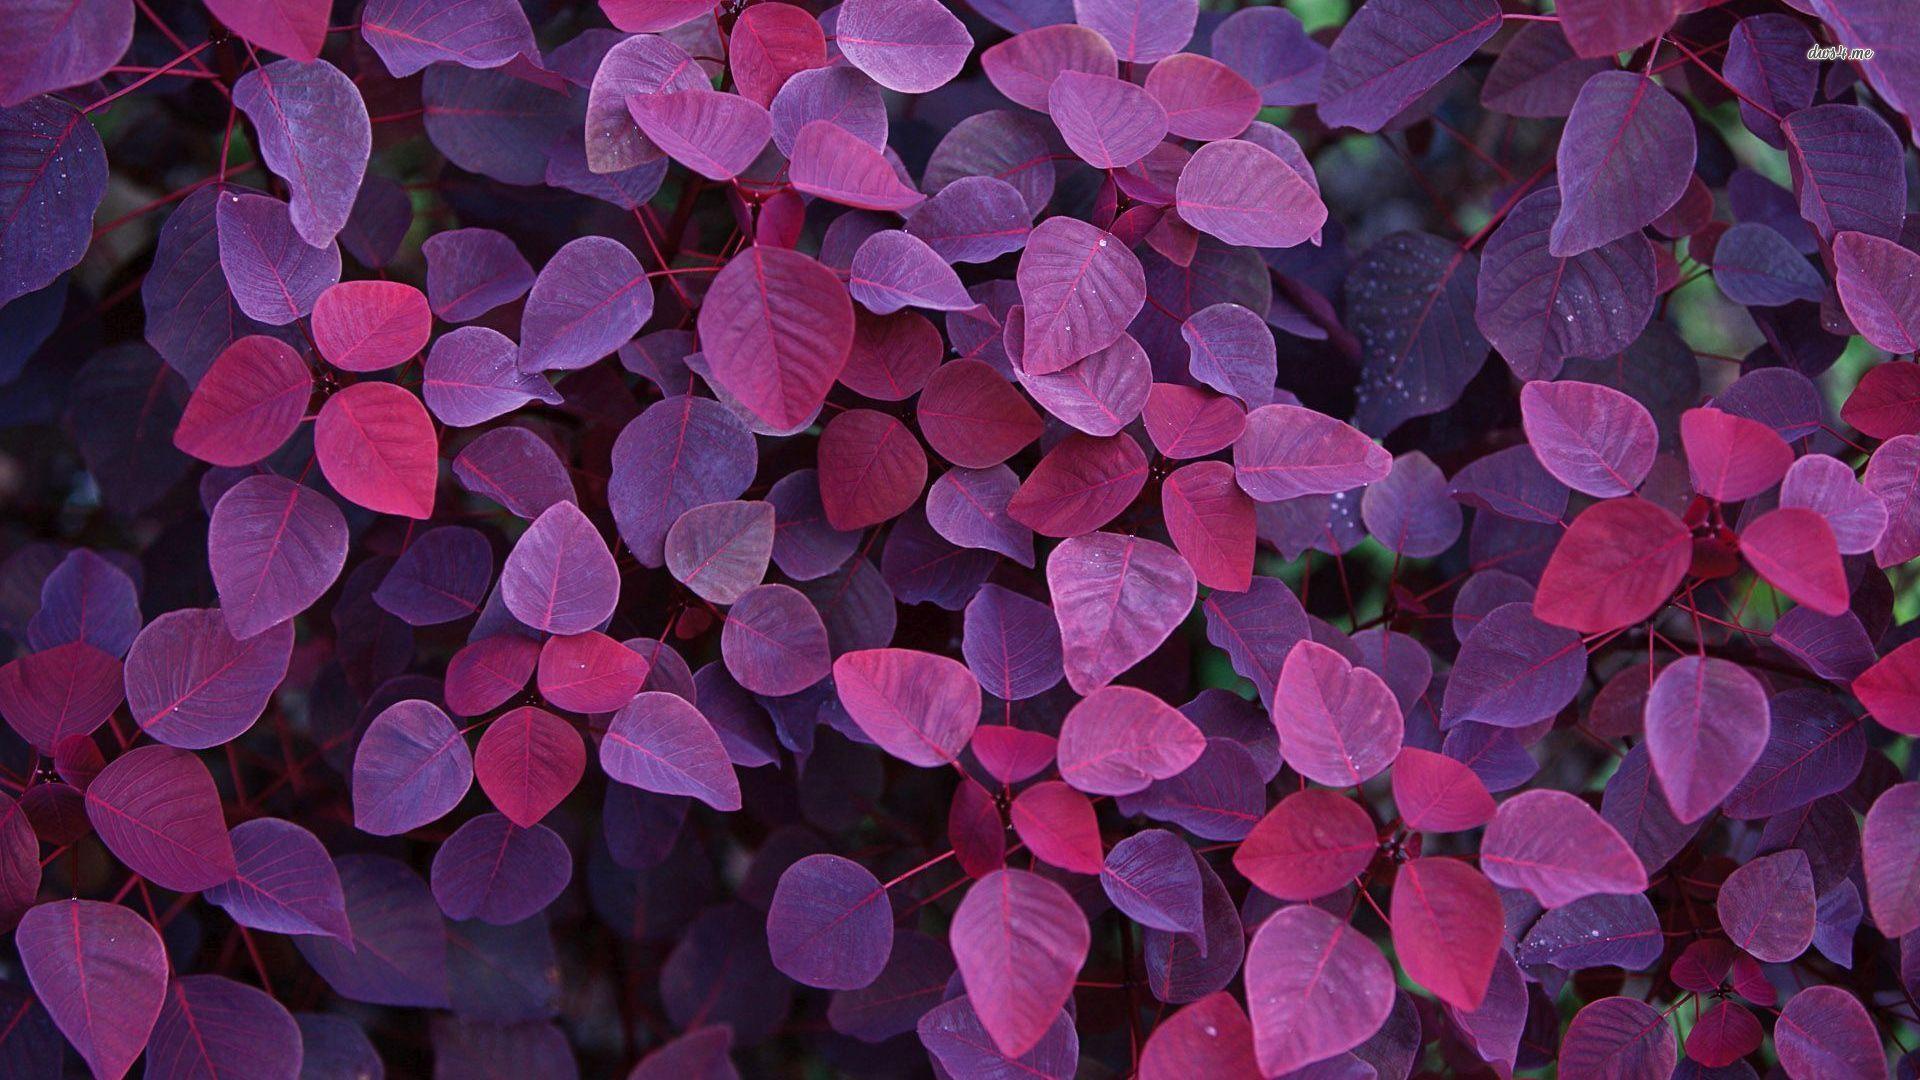 Tận hưởng màu tím tuyệt đẹp của những chiếc lá trong trang trí nền tường của bạn với những hình nền Purple Leaves Wallpaper độc đáo. Hãy trang trí cho căn phòng của bạn thêm phần sinh động và đầy màu sắc với những chi tiết lá đầy sức sống này.